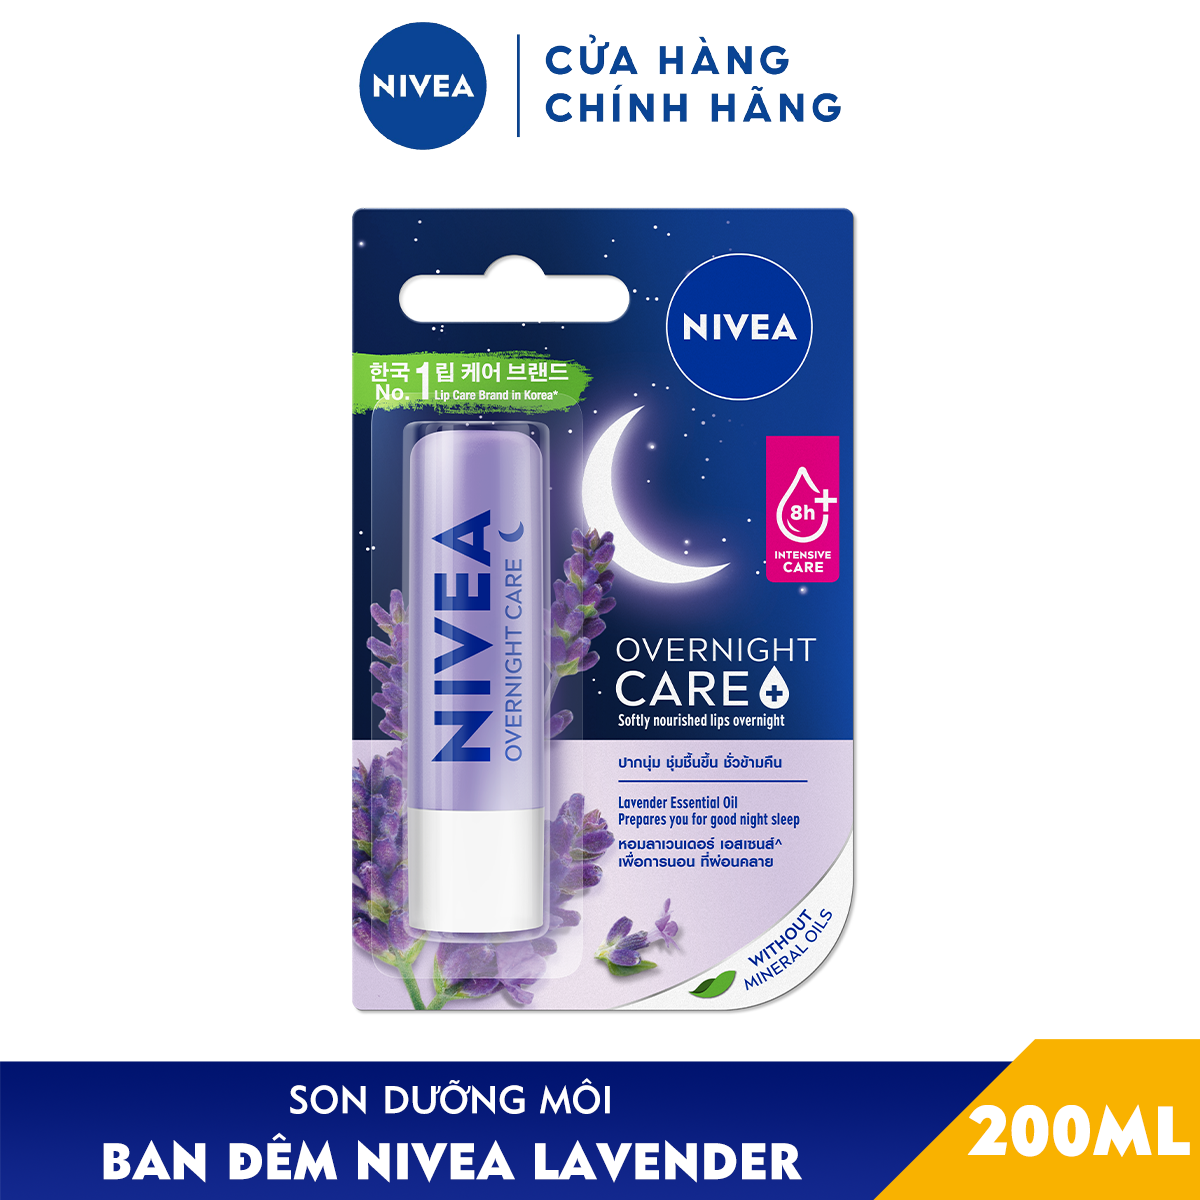 Son Dưỡng NIVEA Ban Đêm Hương Lavender (4.8 g) - 88068